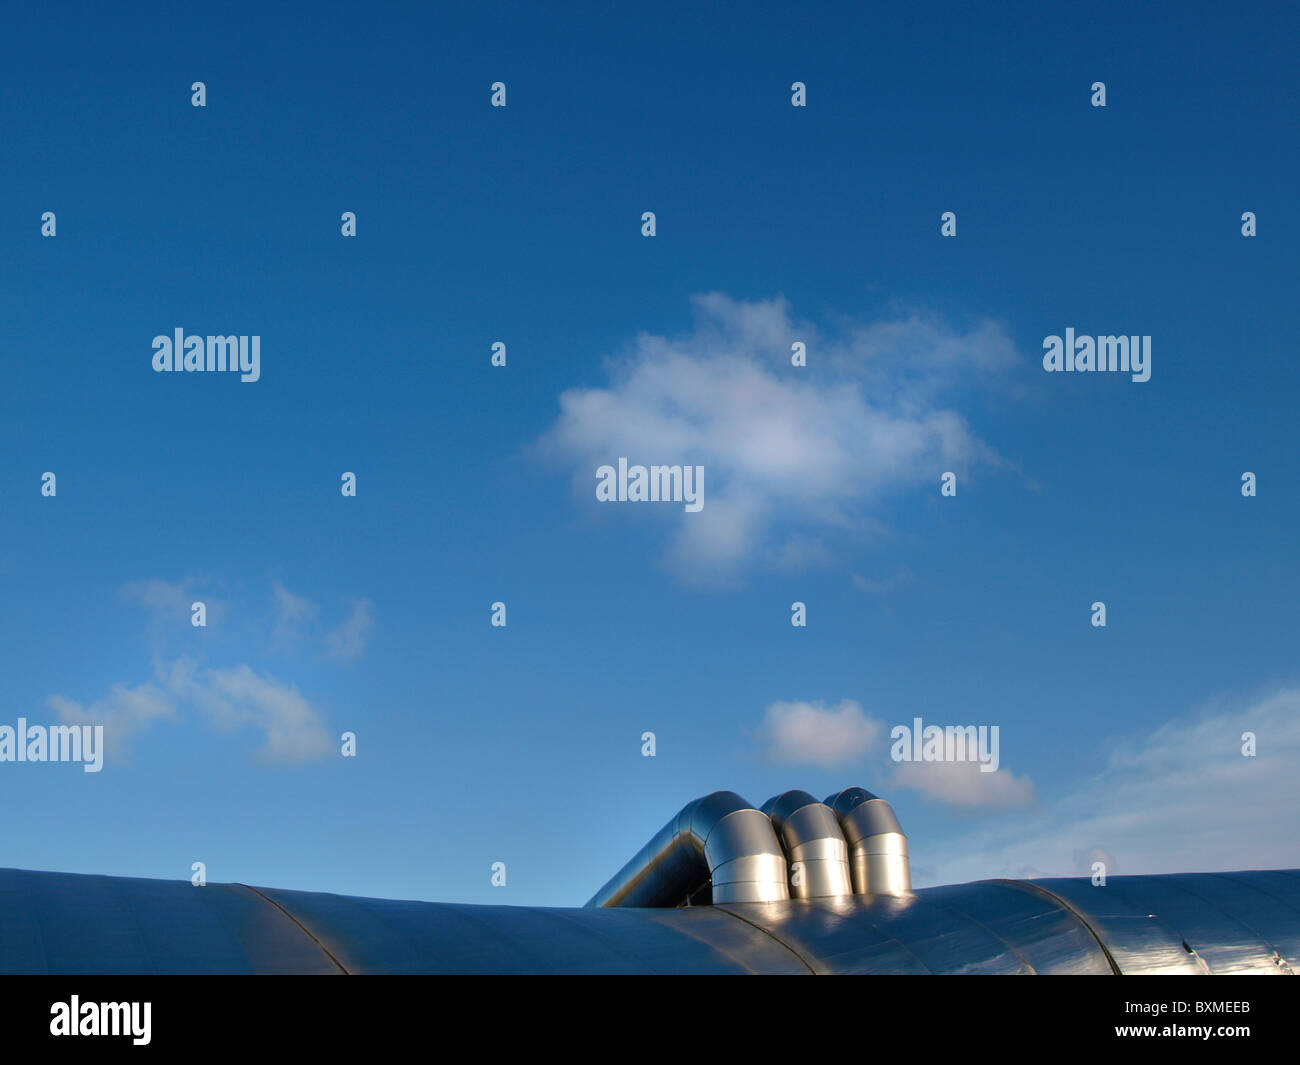 halb abstraktes Bild von moderner Architektur Metall Blob mit Rohren und blauer Himmel mit kleinen Wolke Stockfoto